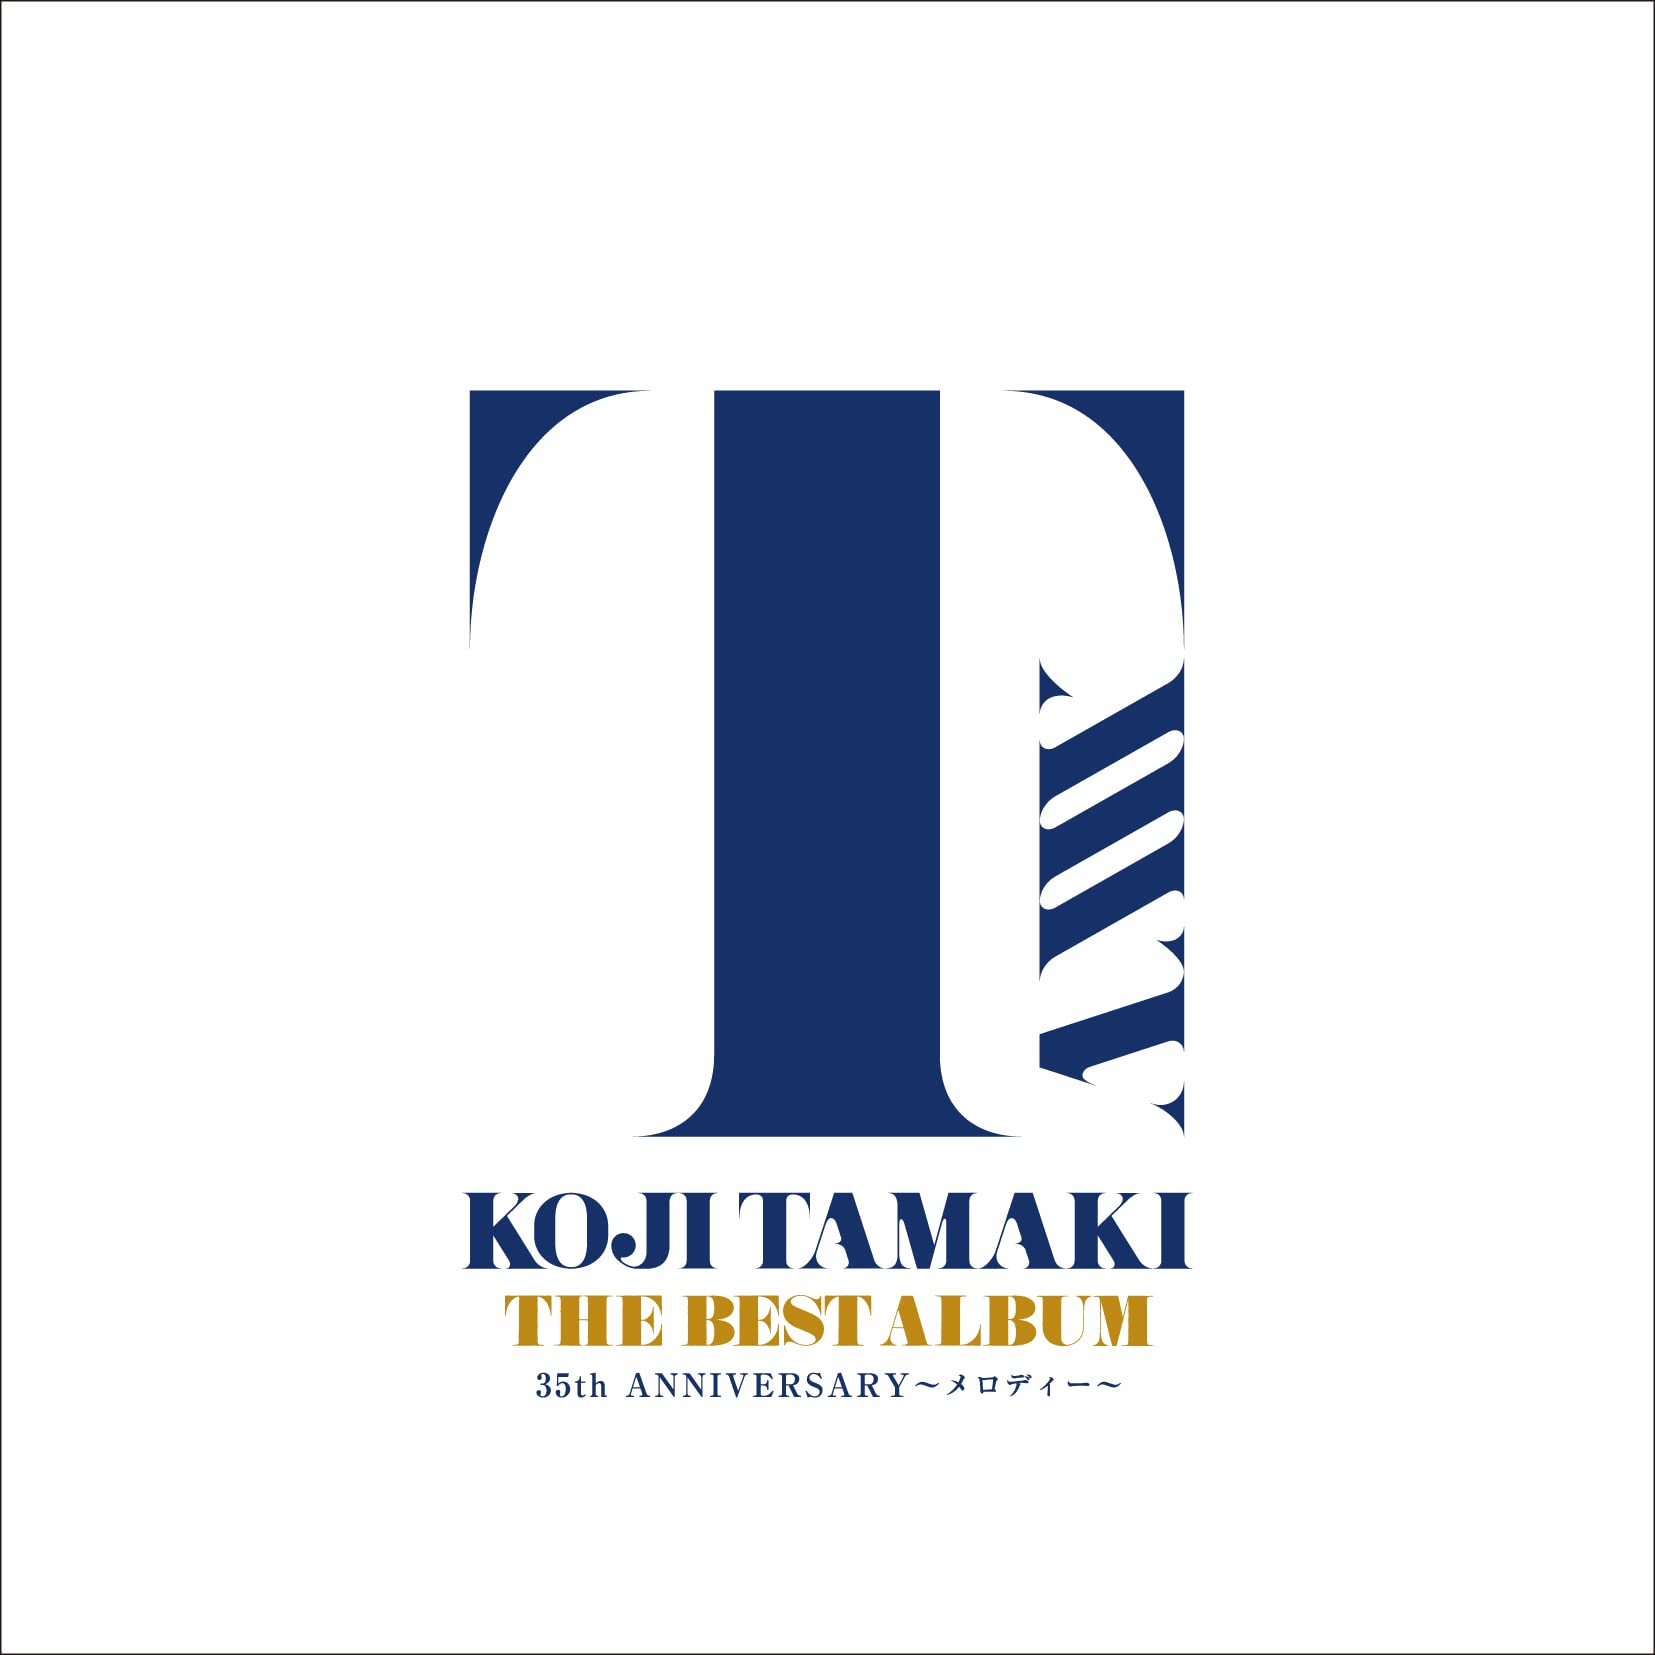 Audio Cd Tamaki Koji - The Best Album 35Th Anniversary-Melody- 2 Cd NUOVO SIGILLATO EDIZIONE DEL SUBITO DISPONIBILE